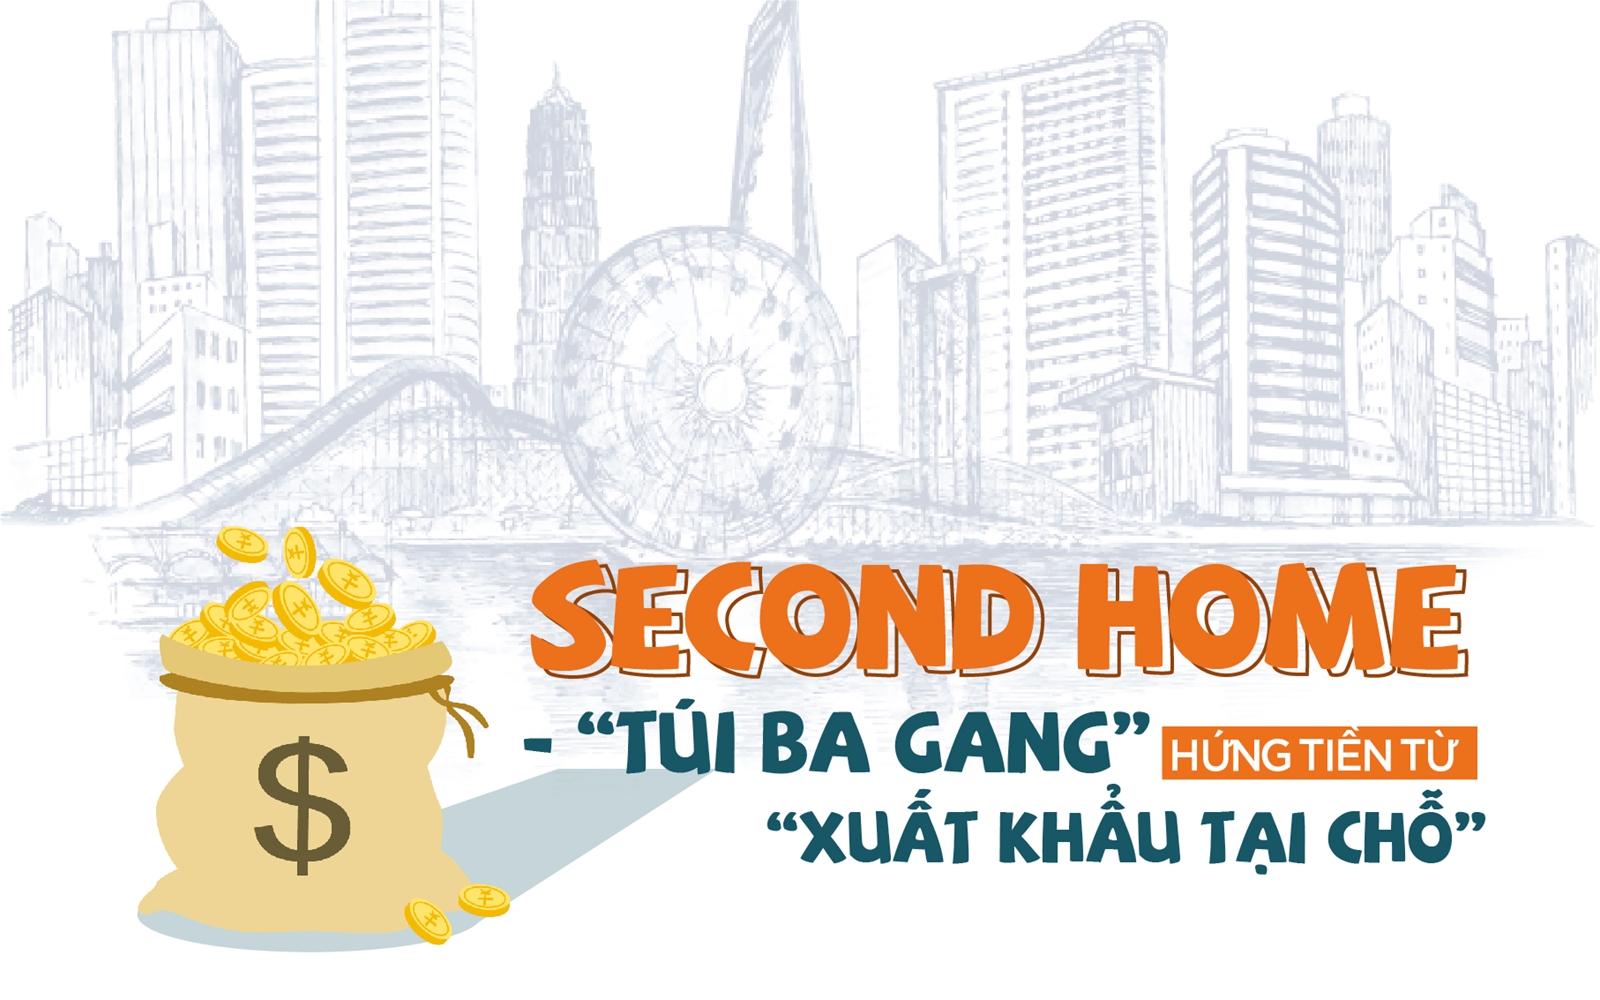 Second Home - “Túi ba gang” hứng tiền từ “xuất khẩu tại chỗ”